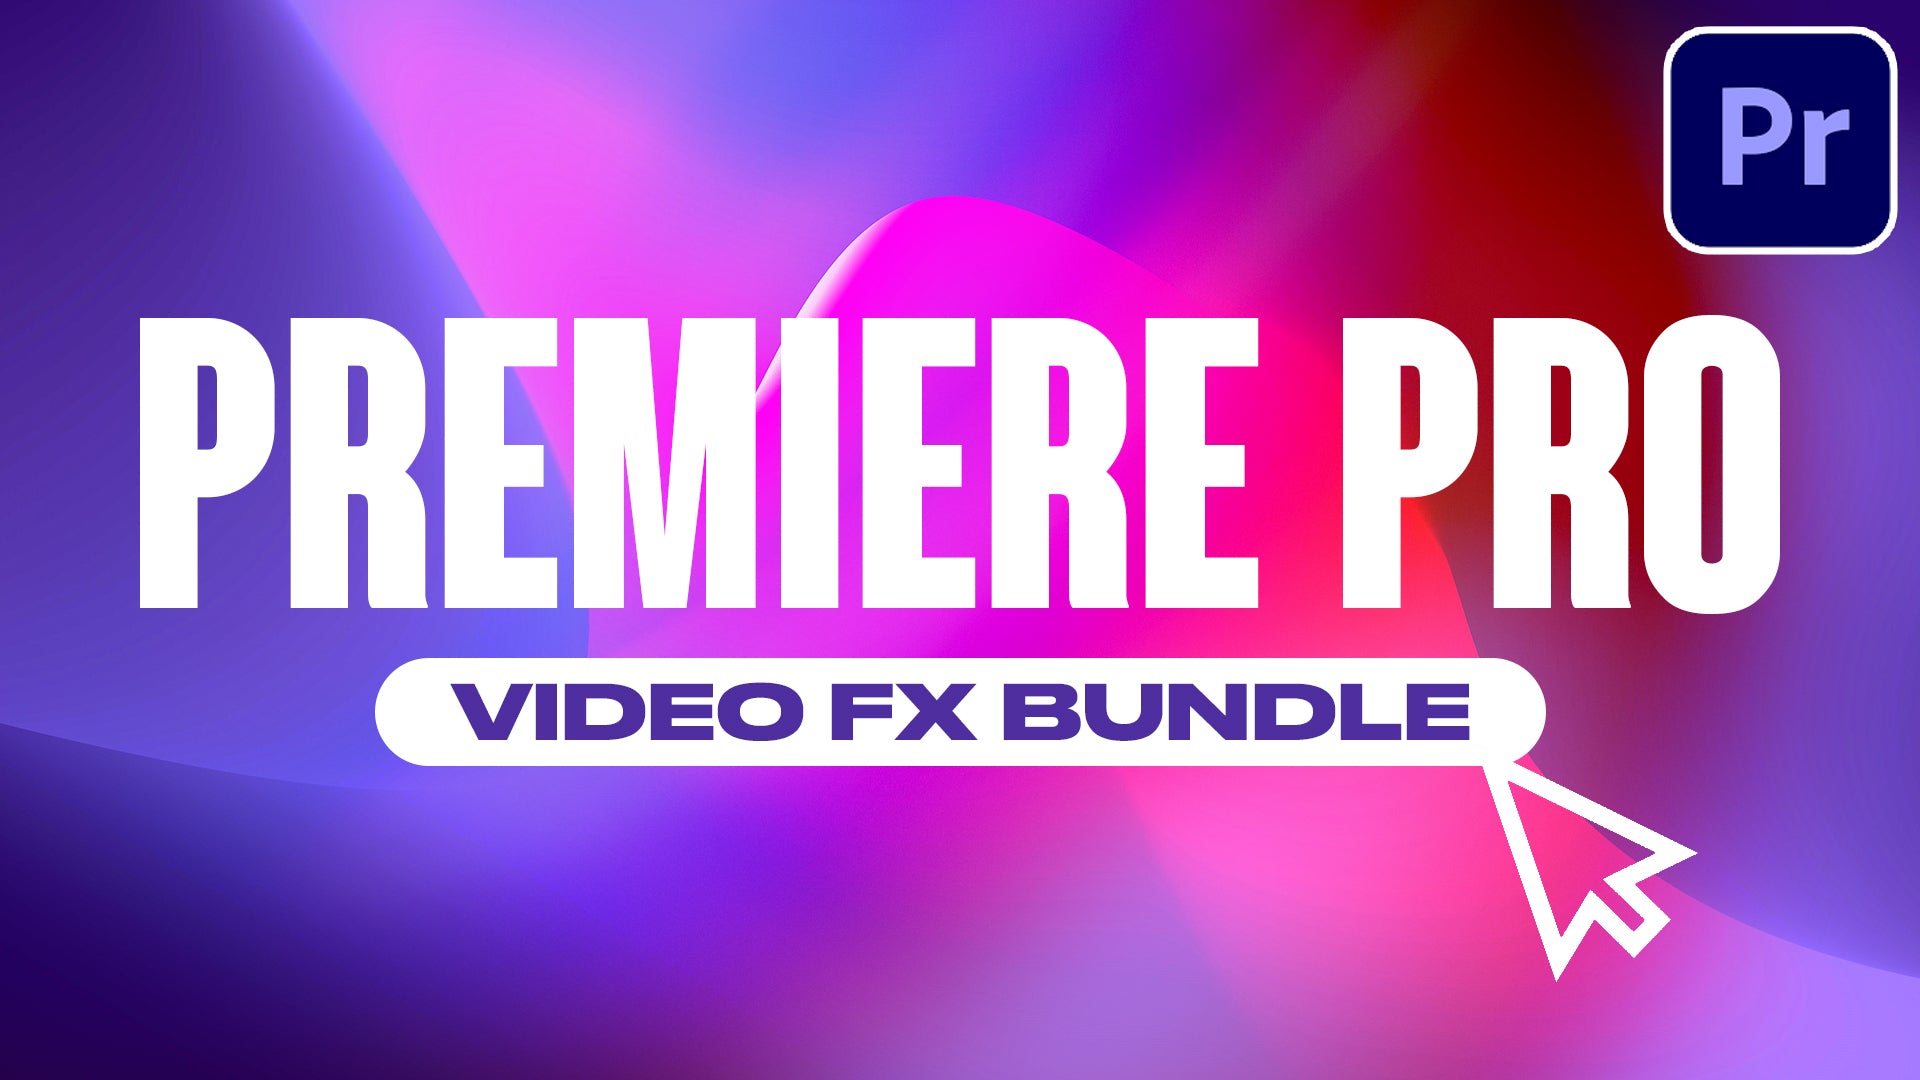 Premiere Pro FX Bundle